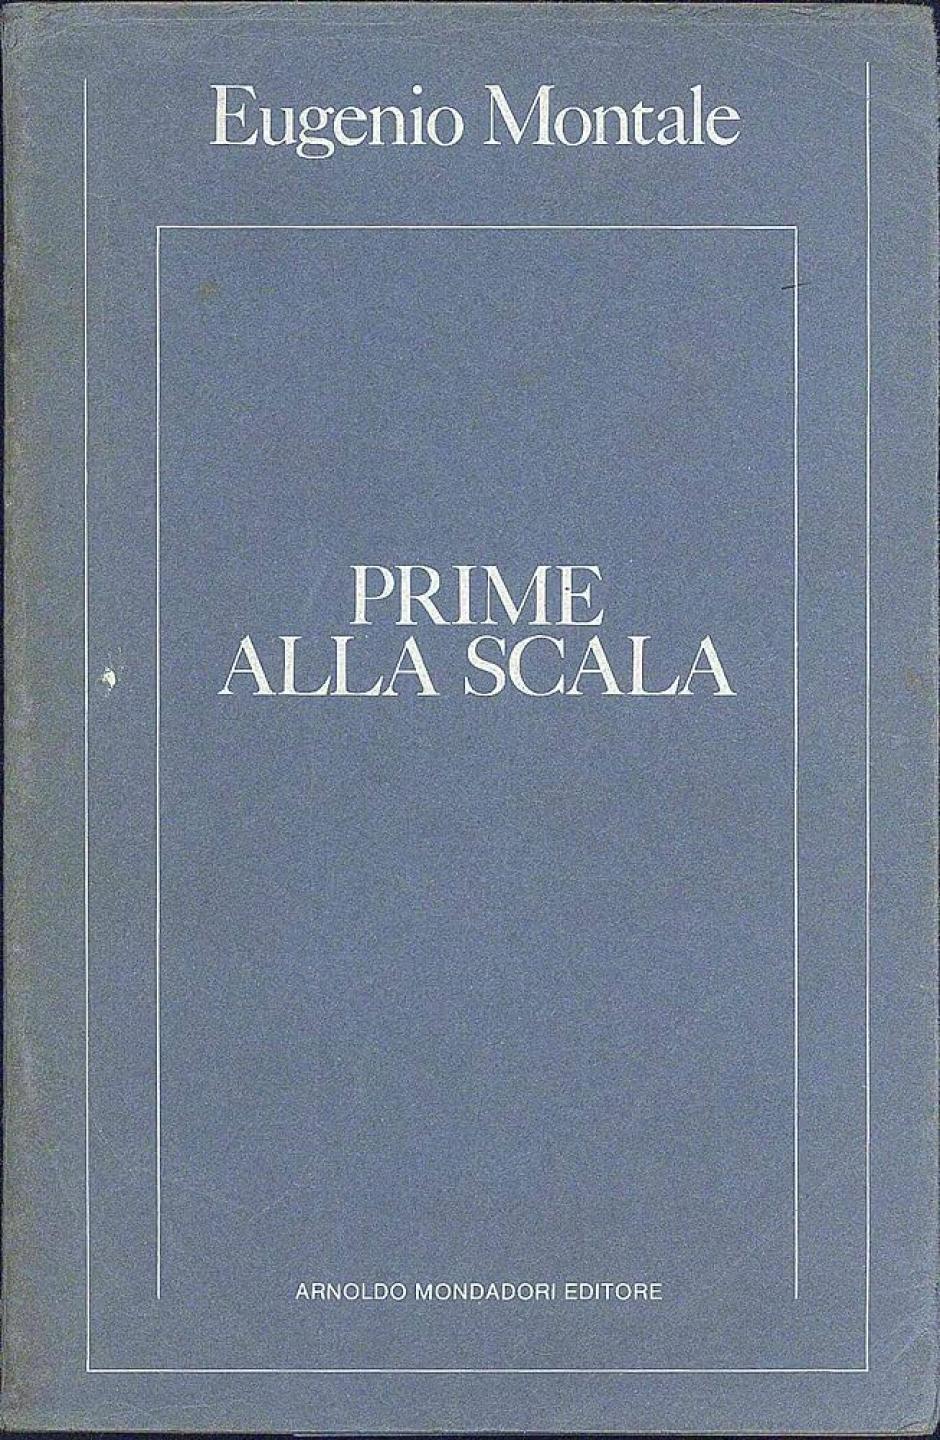 'Prime alla Scala', el libro que recoge los escritos musicales de Eugenio Montale